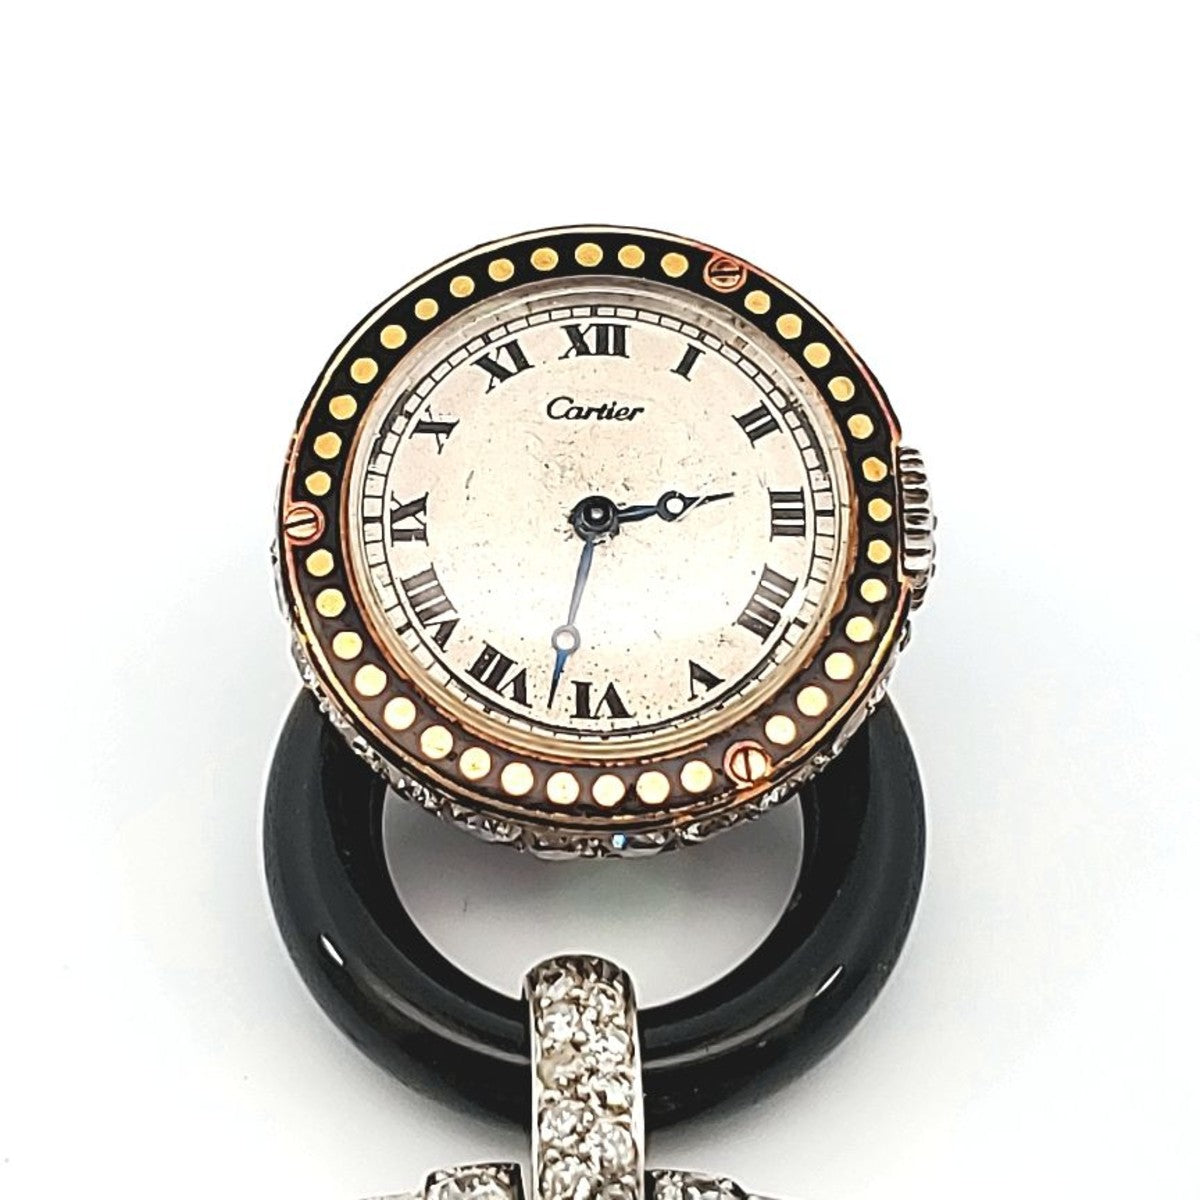 Cartier Paris Art Deco Platinum & 18KT Yellow Gold Diamond, Enamel & Onyx "Cachet" Watch Brooch watch face